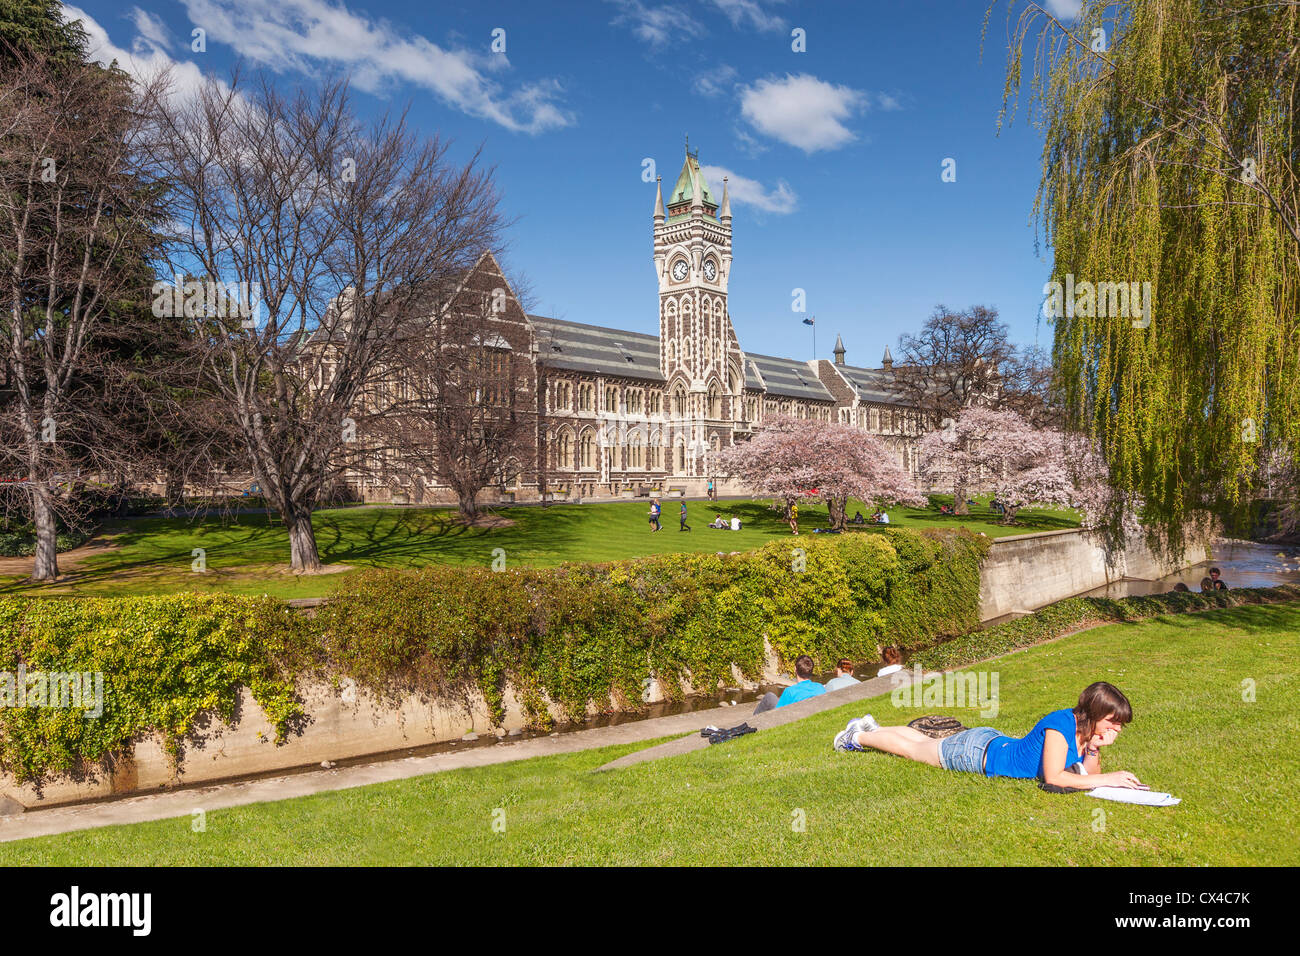 Università di Otago Campus, con la storica Torre dell Orologio edificio del Registro di sistema e la primavera sbocciano i fiori. Studentessa sdraiati sull'erba. Foto Stock